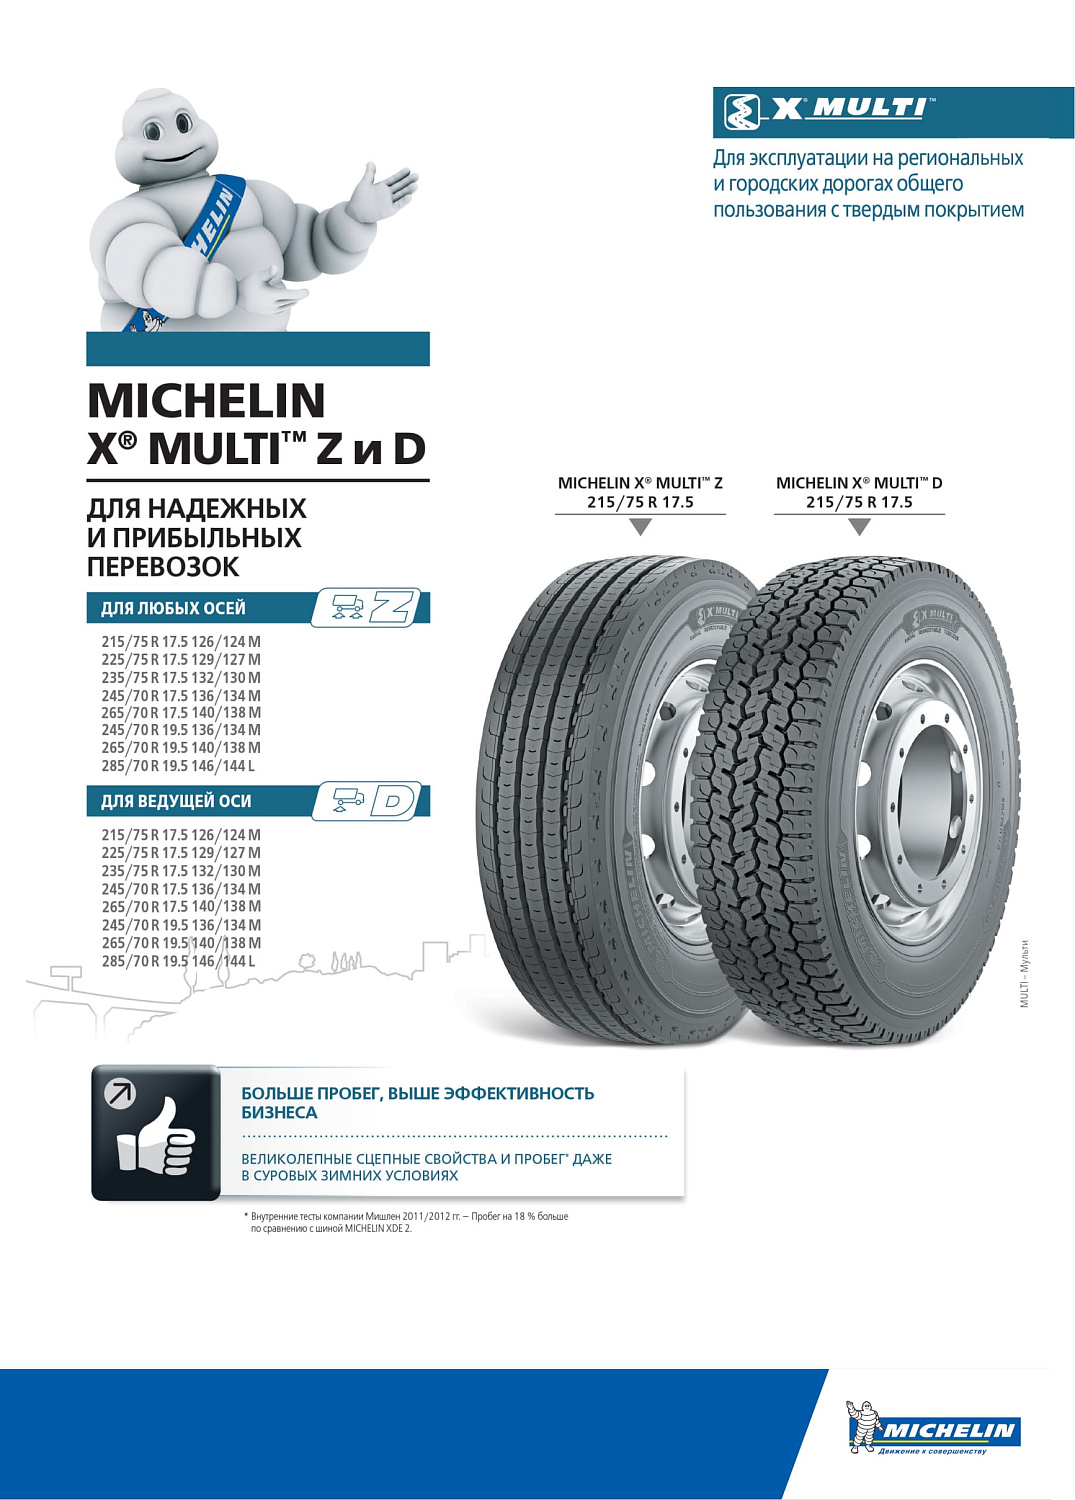 Michelin X Multi Z 235/75 R17.5